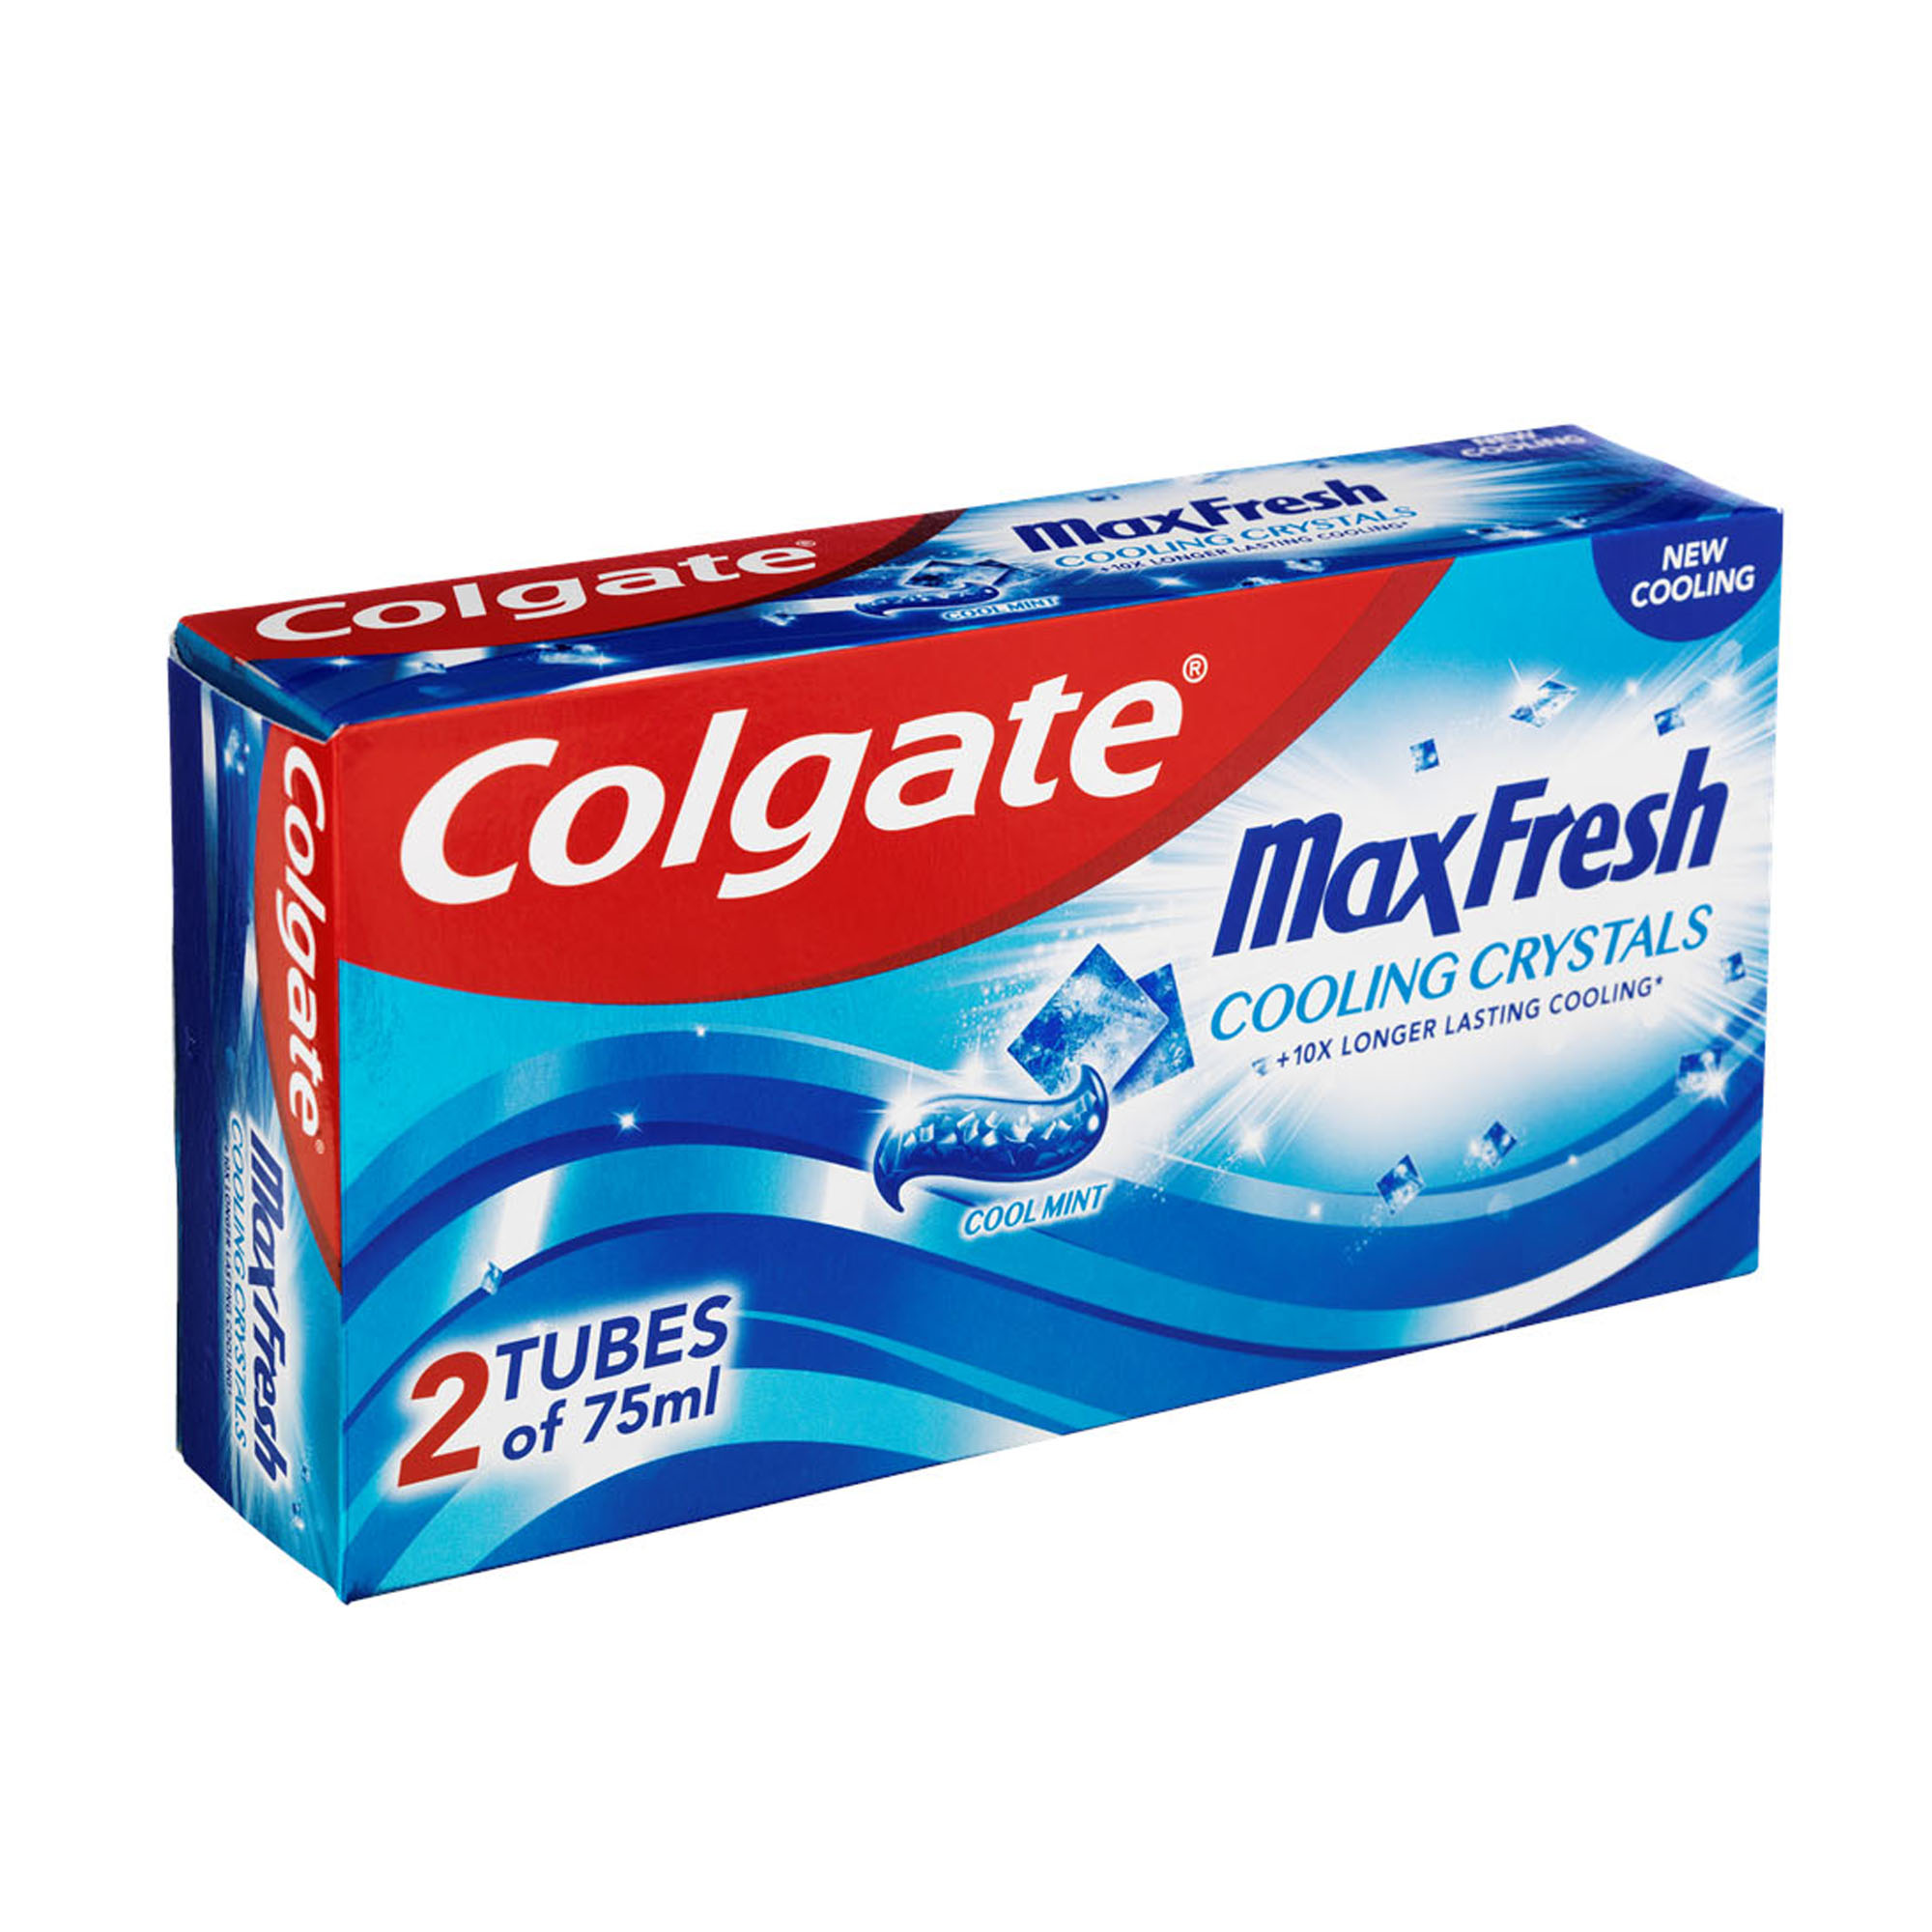 Colgate Max Fresh Cool Mint 2x75mll